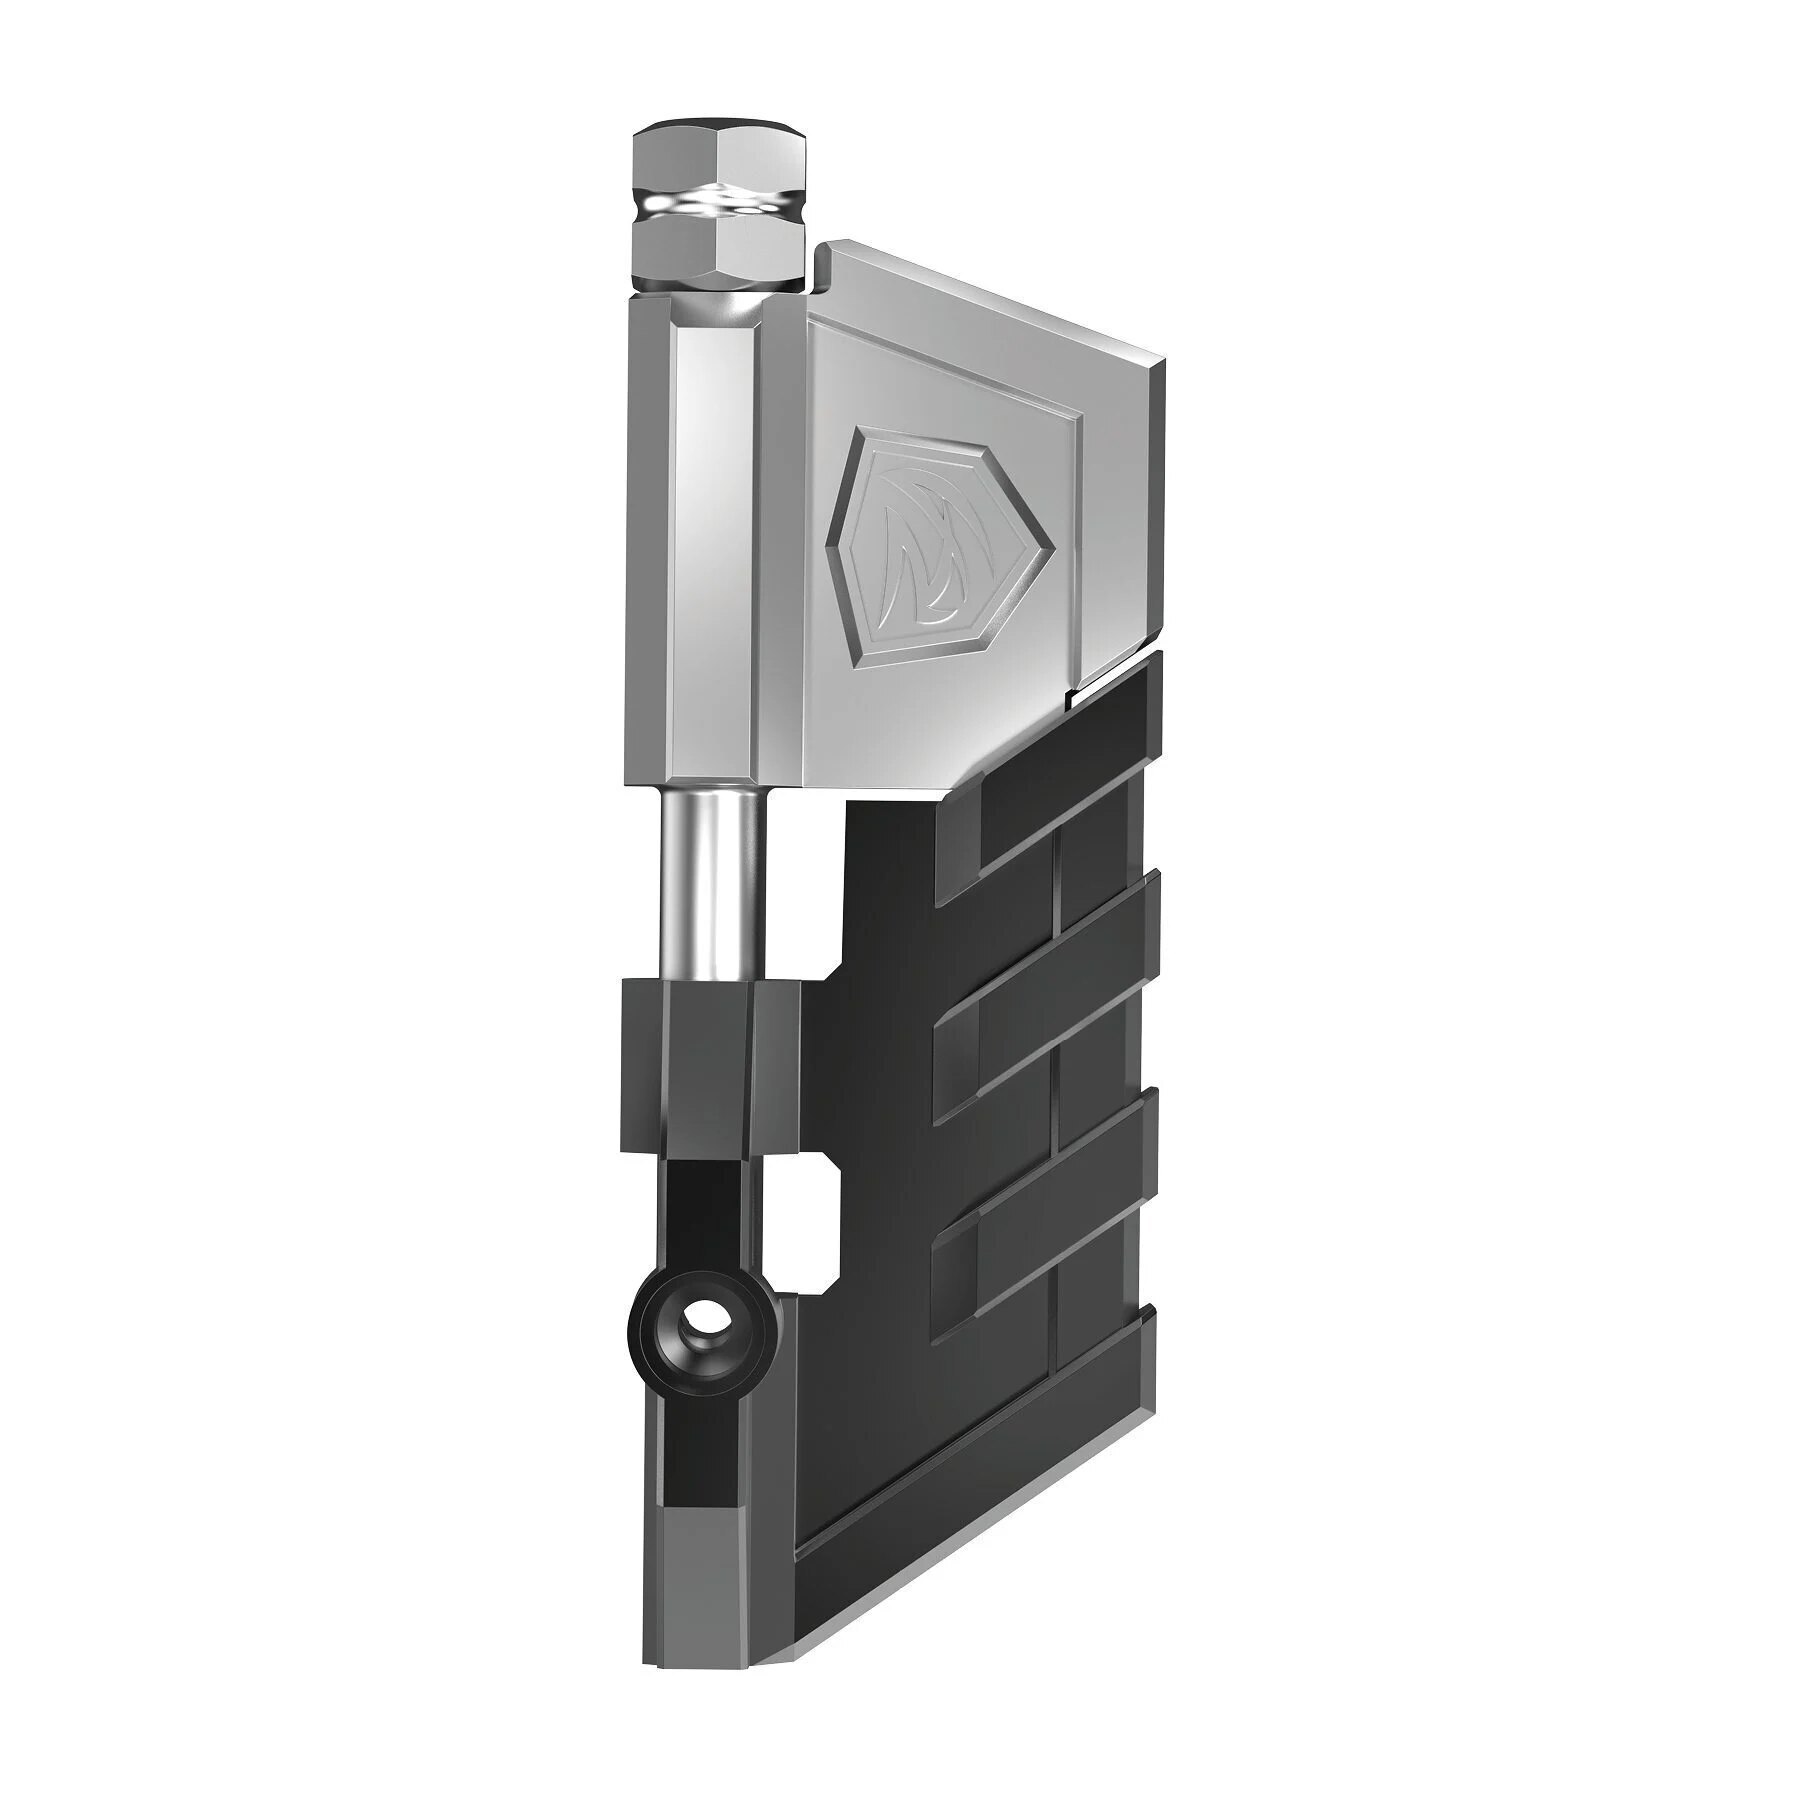 Nástroj pro čep  AR15 Pivot Pin Real Avid® (Barva: Černá)